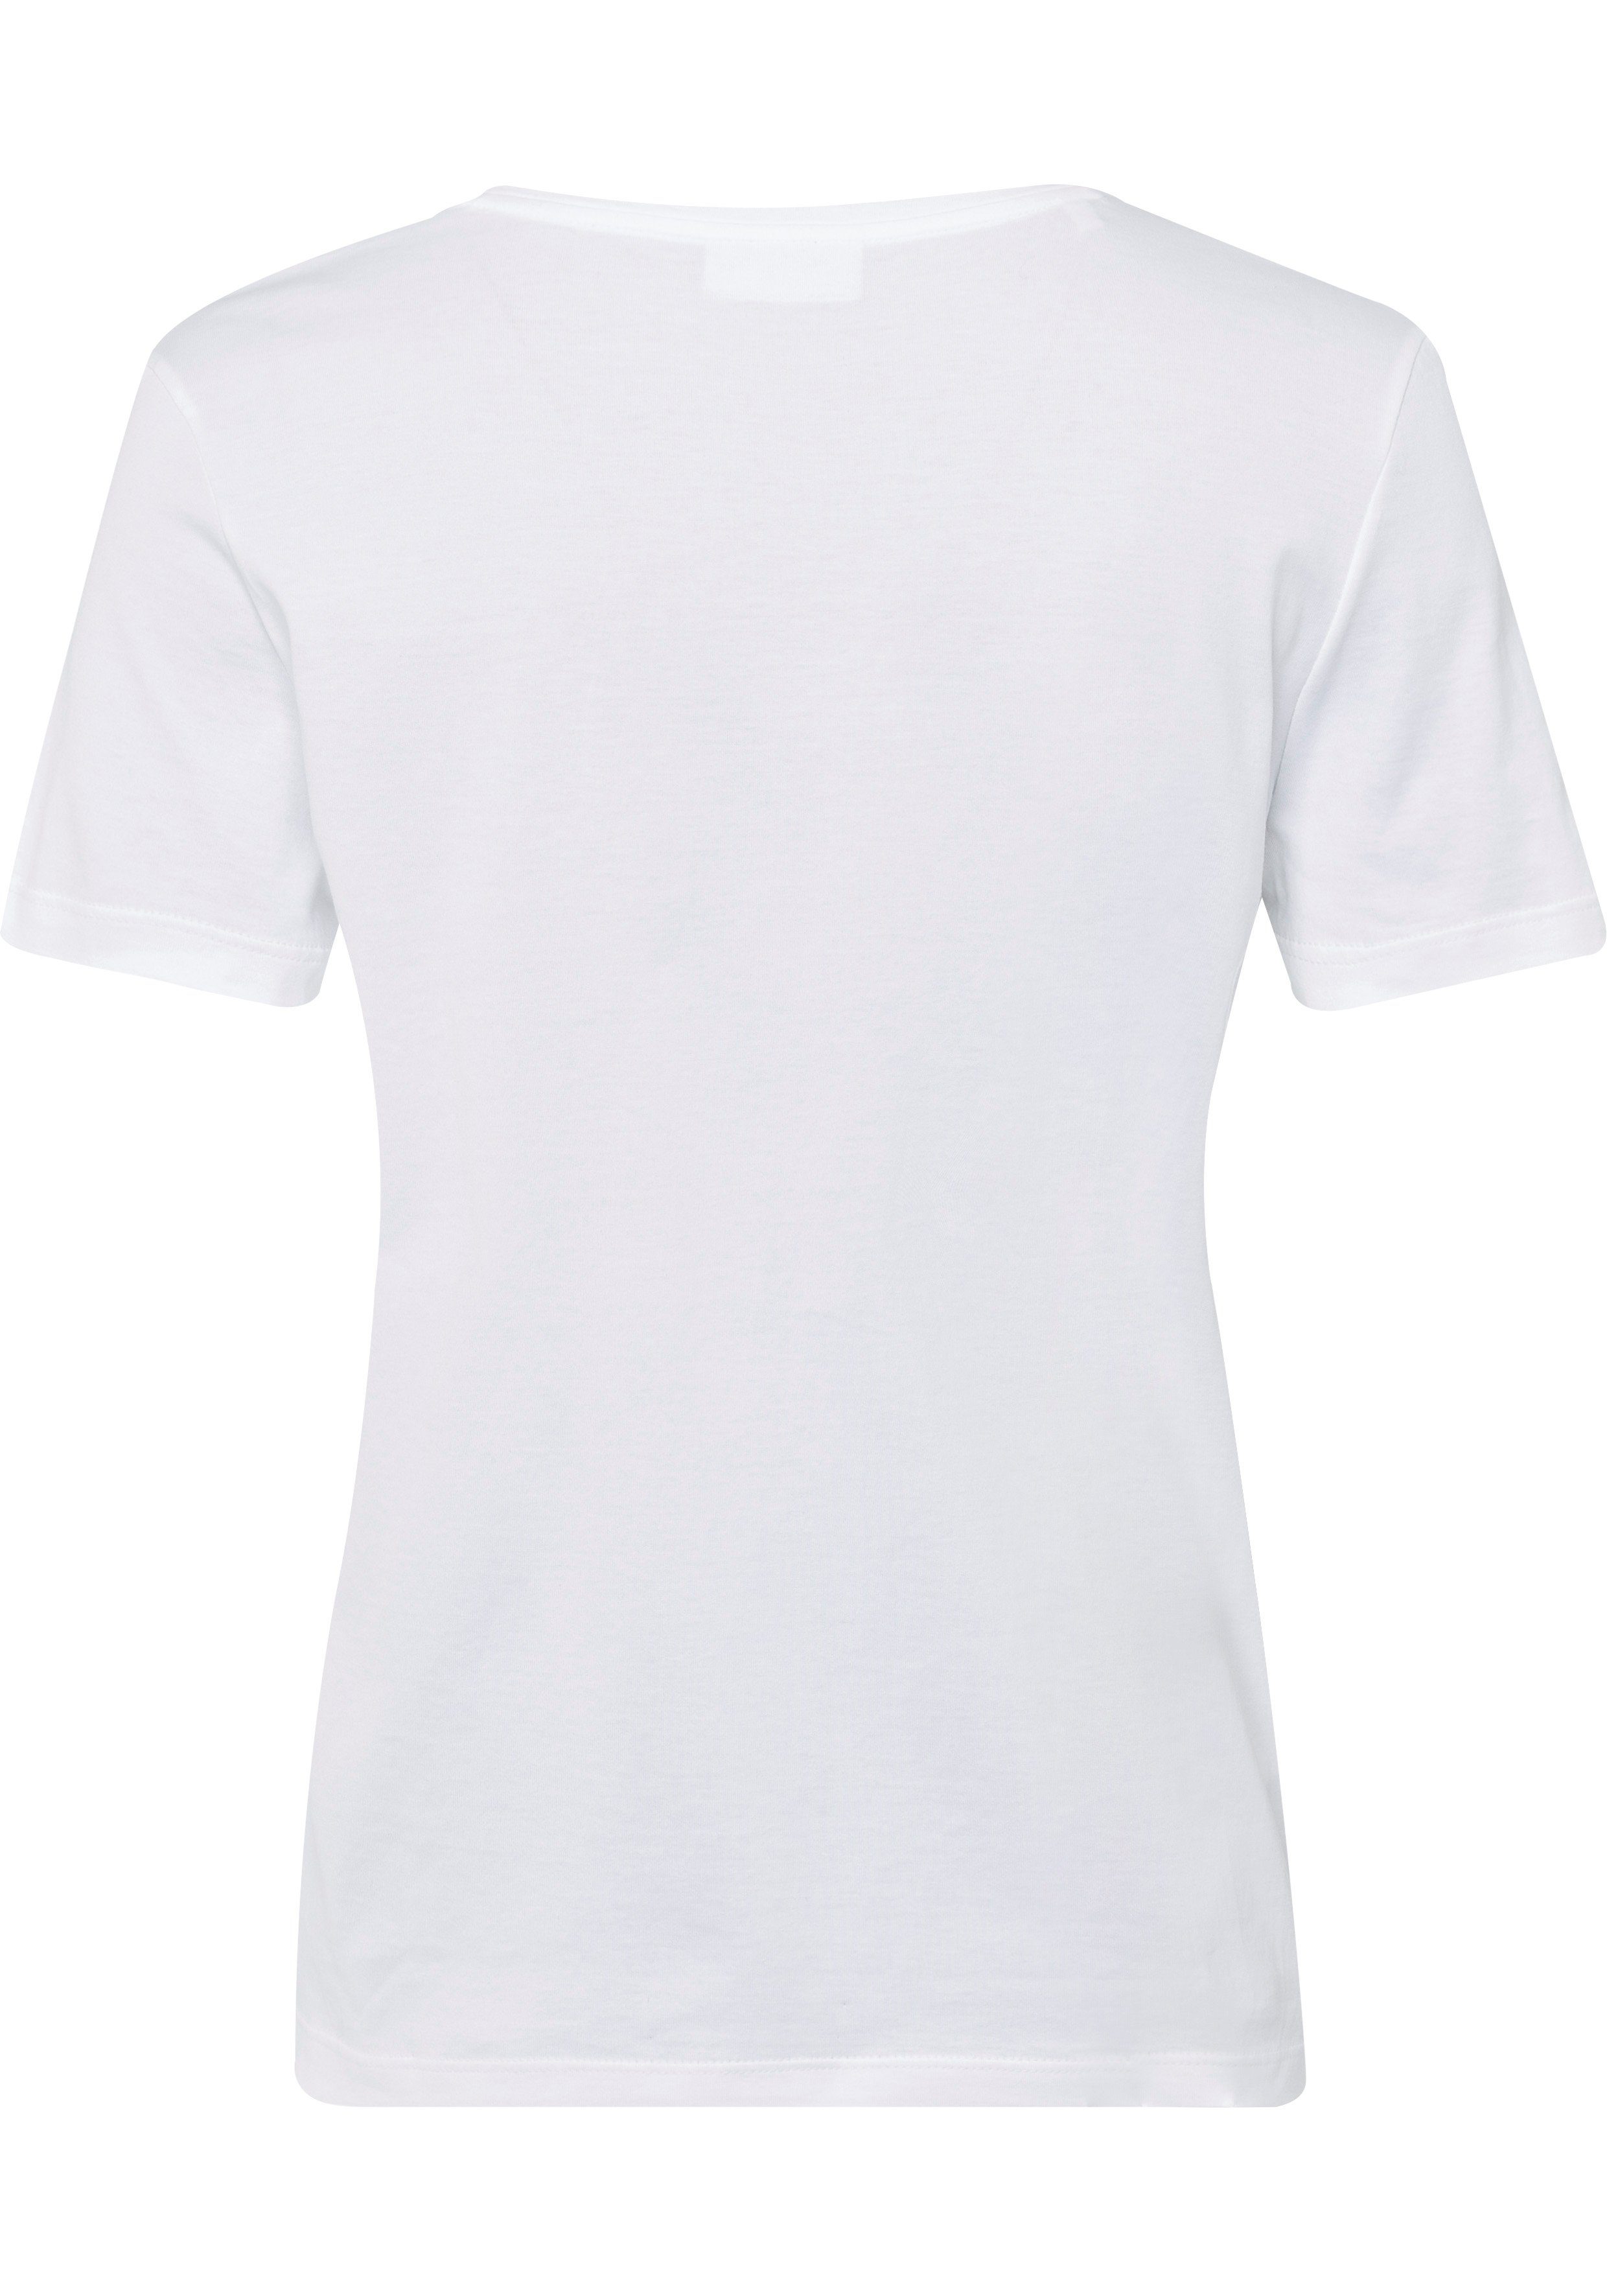 Lacoste Damen-T-Shirt weiß auf T-Shirt mit V-Ausschnitt mit Lacoste (1-tlg) Logo-Patch Brust der